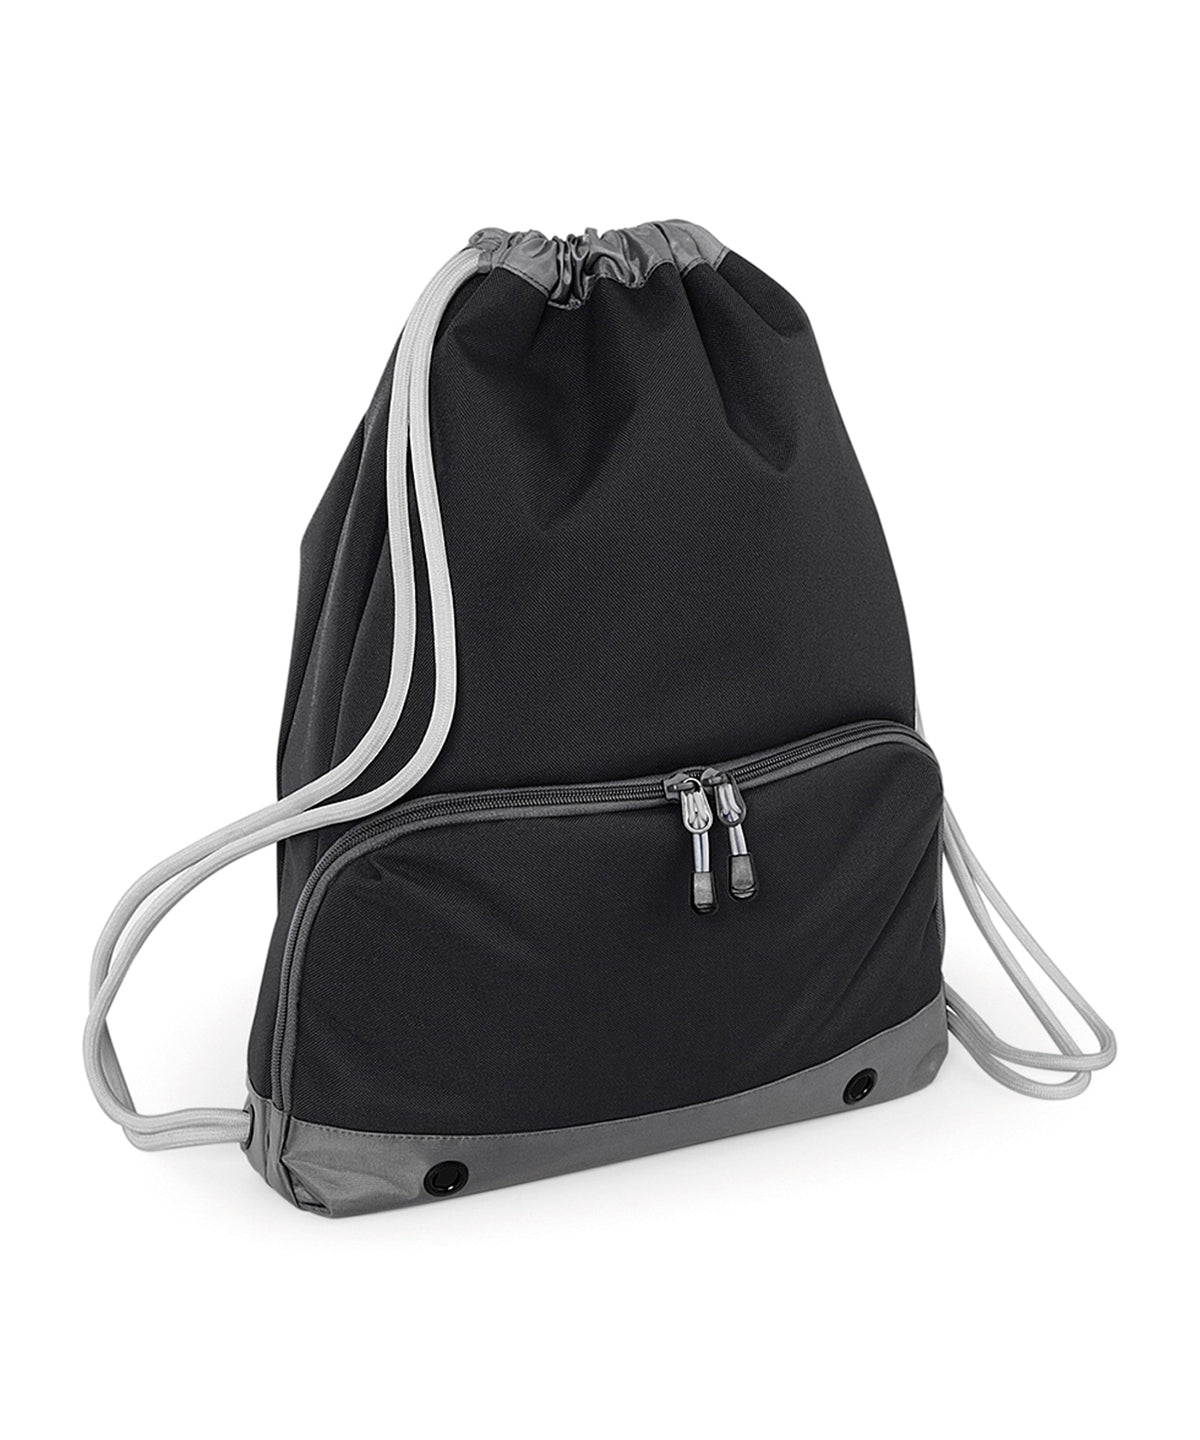 Personalised Bags - Black Bagbase Athleisure gymsac